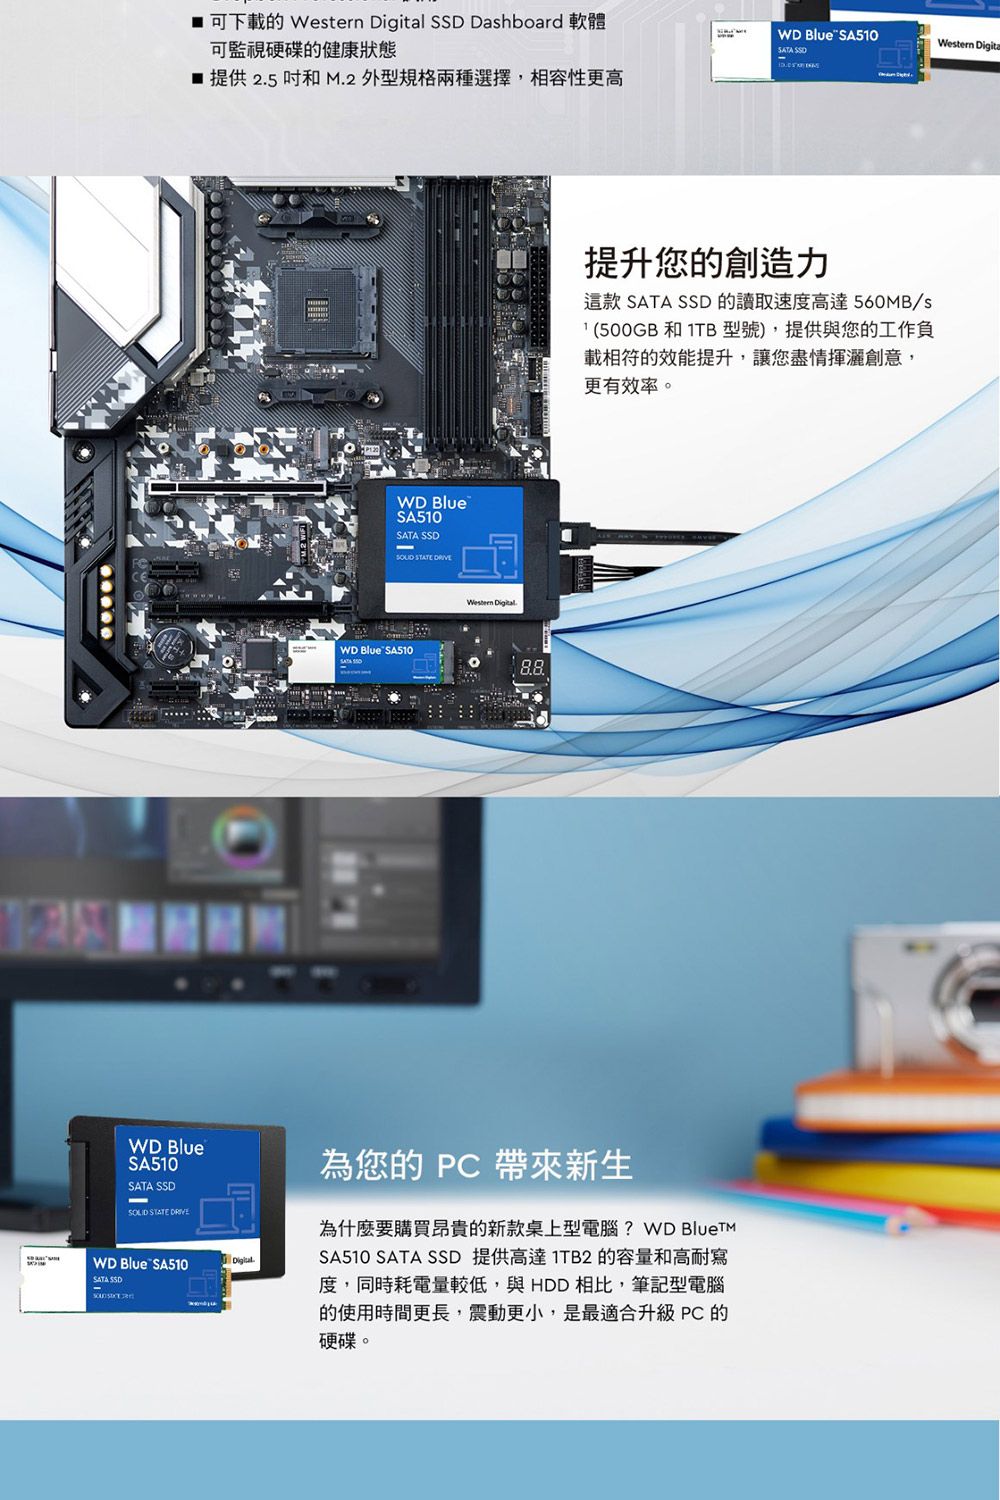 WD BlueSA510SATA  STATE  iU    Dashboard niʵwЪdA  25  M.2 ~Wؿ,ۮeʧWD Blue SA510SATA SSDDigitalWD BlueSA510SATA SSD STATE WD Blue SA510Western Digital.WD Blue SA510SATA SSDz PC aӷsͬnʶRQsڮWq ? WD BlueTMSA510 SATA SSD ѰF 1TB2 eqM@g,PɯӹqqC,P HDD ۤ,Oqϥήɶ,_ʧp,O̾AXɯ PC wСC ɱzгyOo SATA SSD ŪtװF560MB/s(500GB M 1TB ),ѻPzu@t۲Ūįണ,zɱxзN,󦳮ĲvCWestern Digita